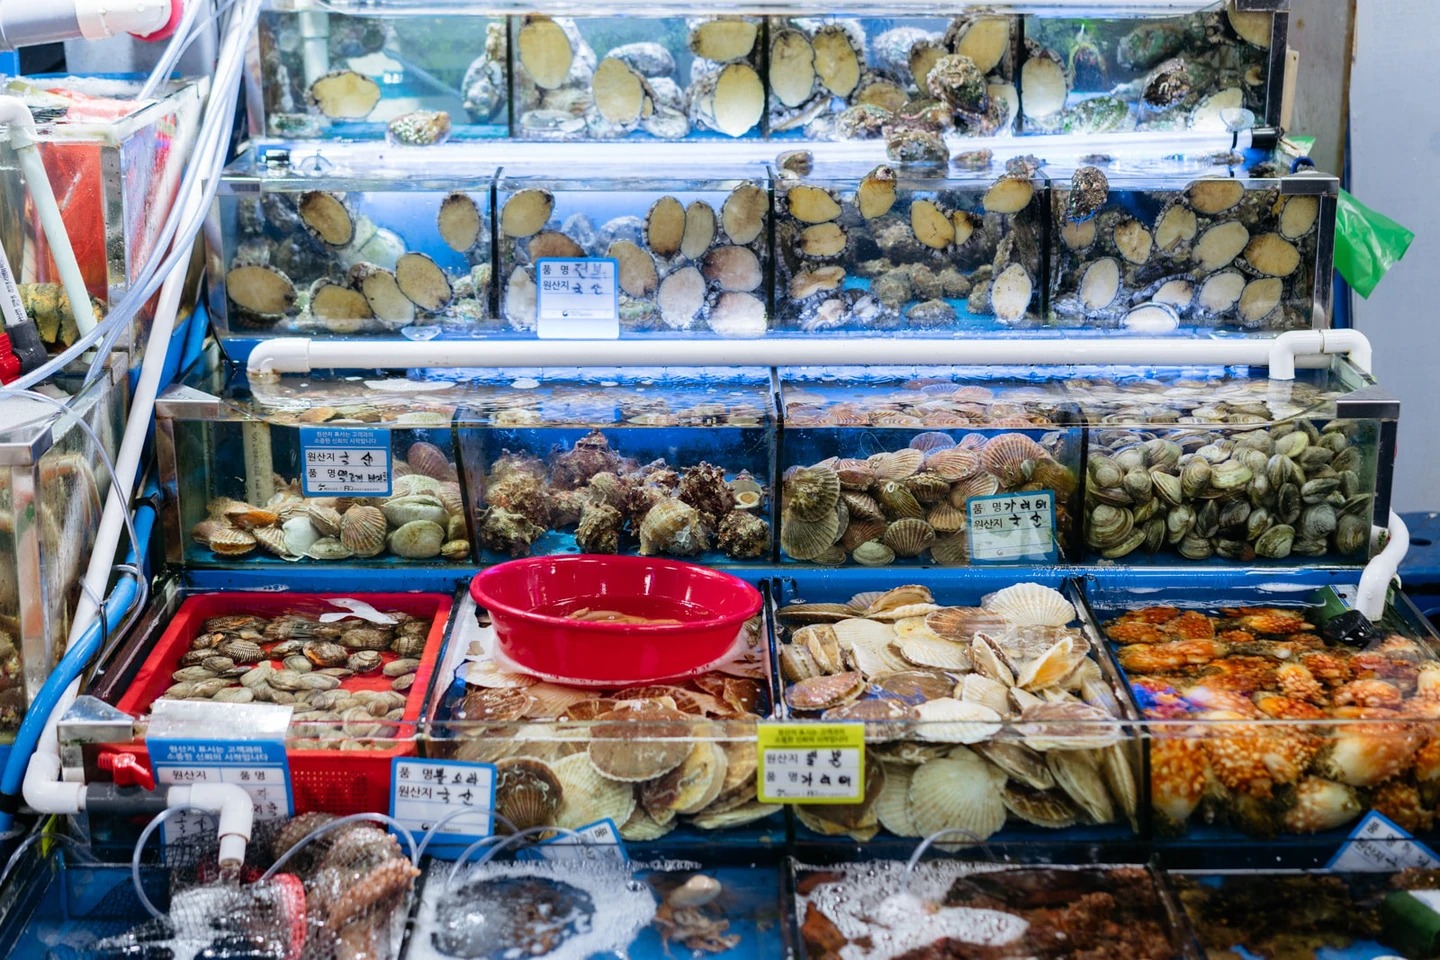 Cô gái Việt kể chuyện đi chợ hải sản tươi sống nổi tiếng Hàn Quốc: Có thể ăn ngay tại chợ luôn, 4 triệu đồng một bữa không gọi là đắt - Ảnh 2.